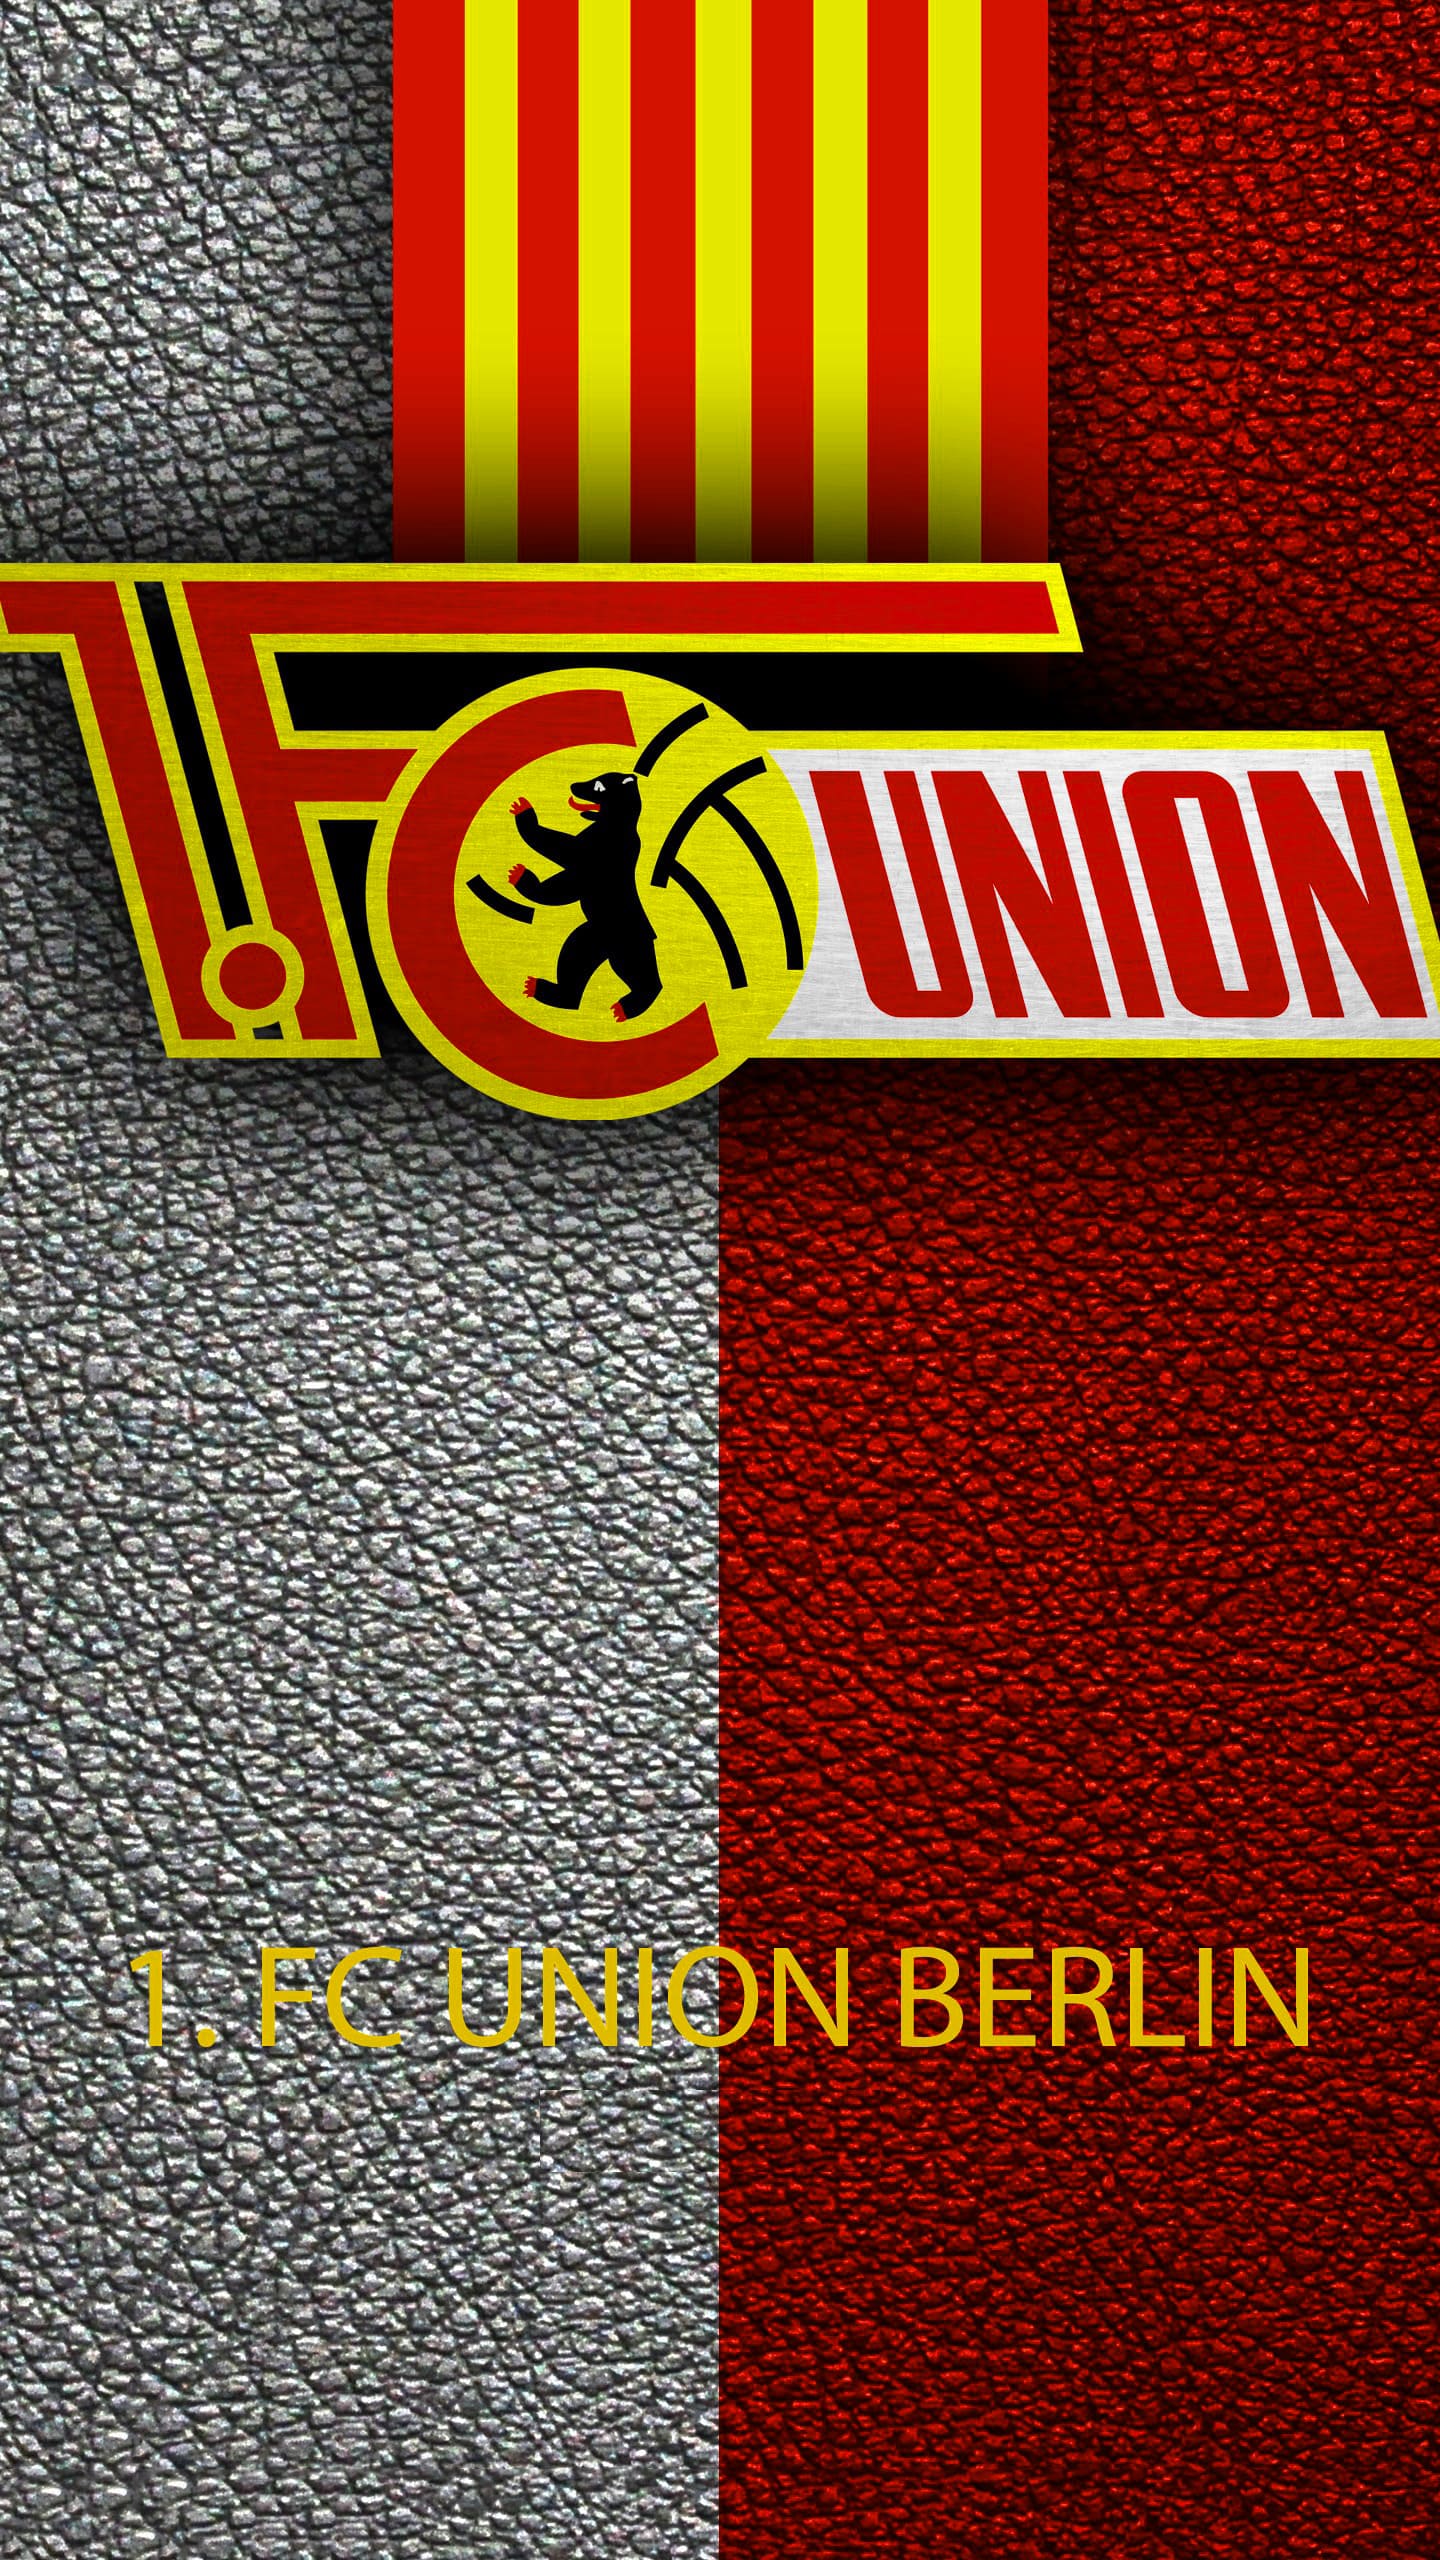 Union Berlin Wallpapers